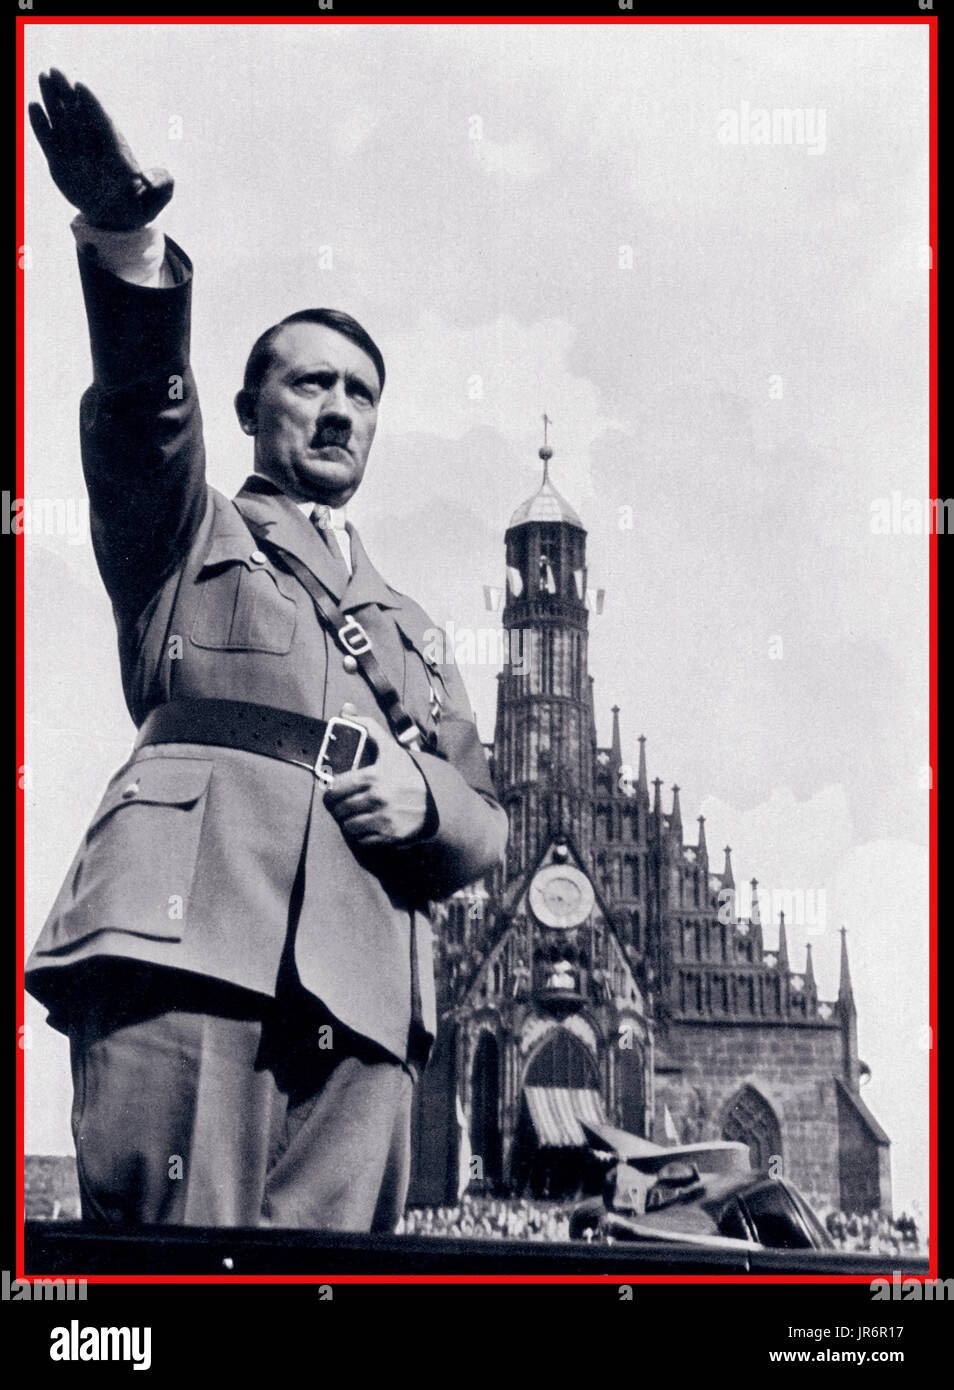 Führer Adolf Hitler in Uniform gibt Nazi Heil Hitler salute von seinem Auto während ein Nazi Party Rally in den 1930er Jahren Adolf Hitler begrüßt Gast in seinem offenen Wagen an der Parade Reichsparteitag Nürnberg Deutschland Stockfoto